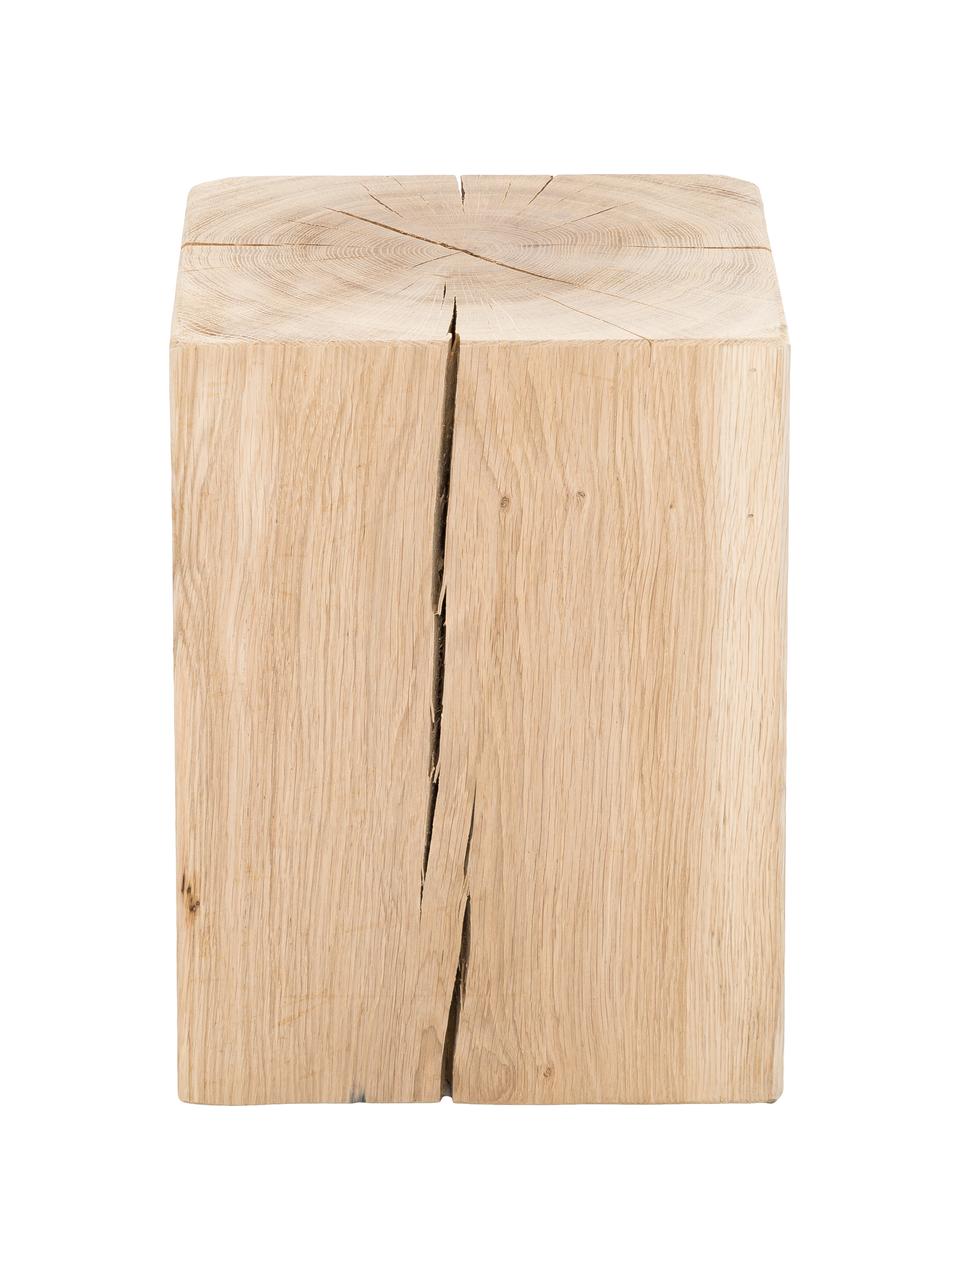 Tabouret bois de chêne massif Block, Bois de chêne, Chêne, larg. 29 x haut. 40 cm